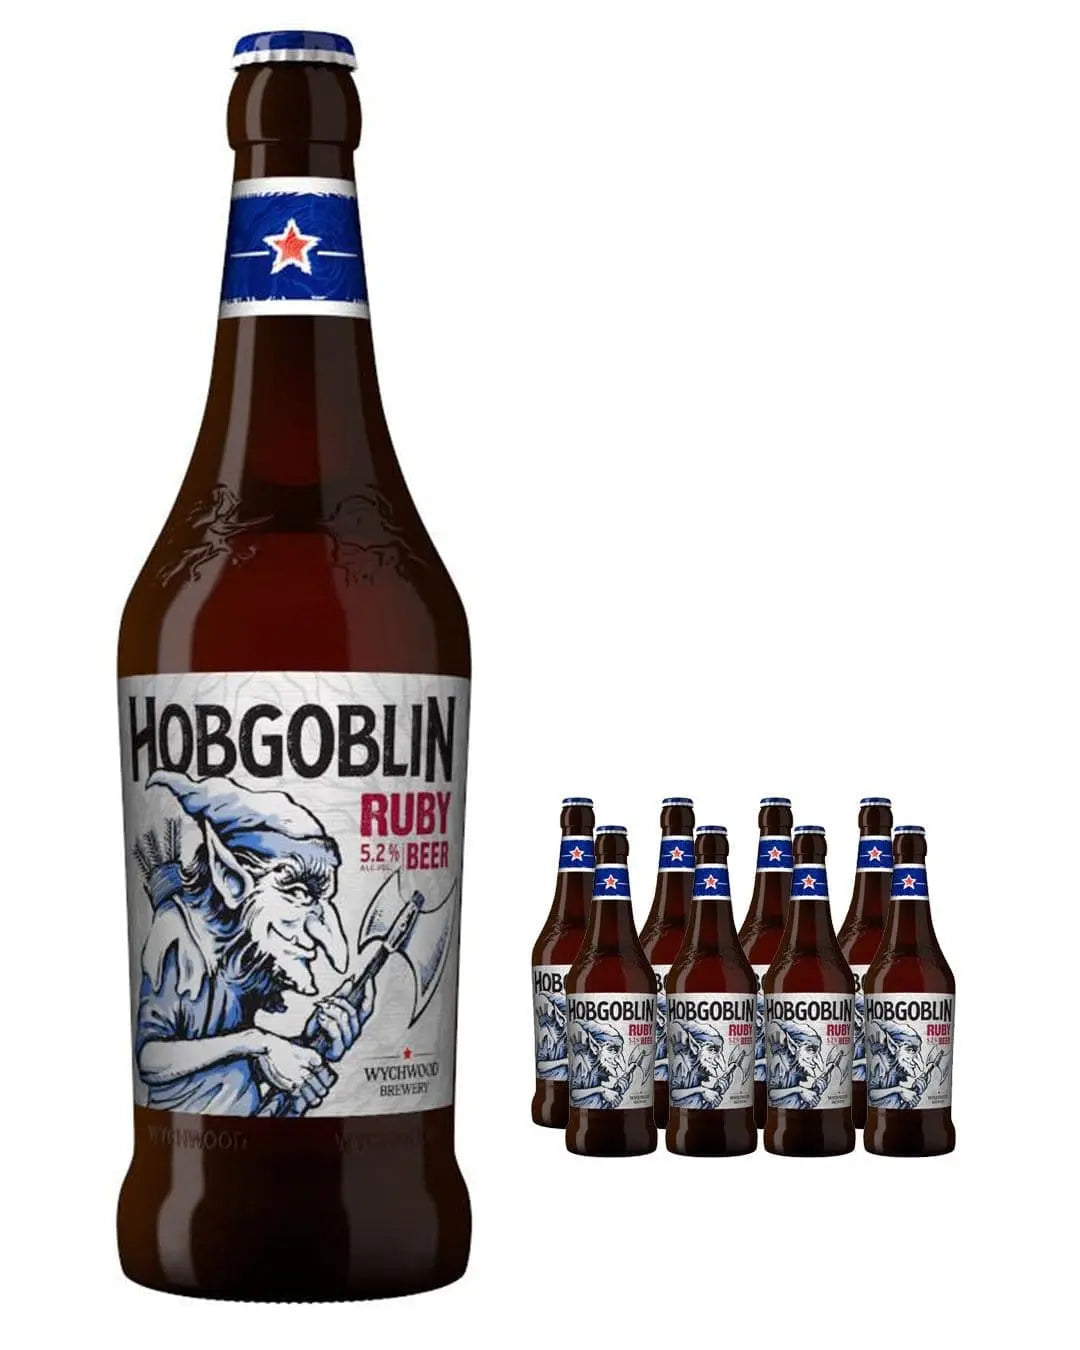 Wychwood Hobgoblin Ruby Beer Bottle Multipack, 8 x 500 ml Beer